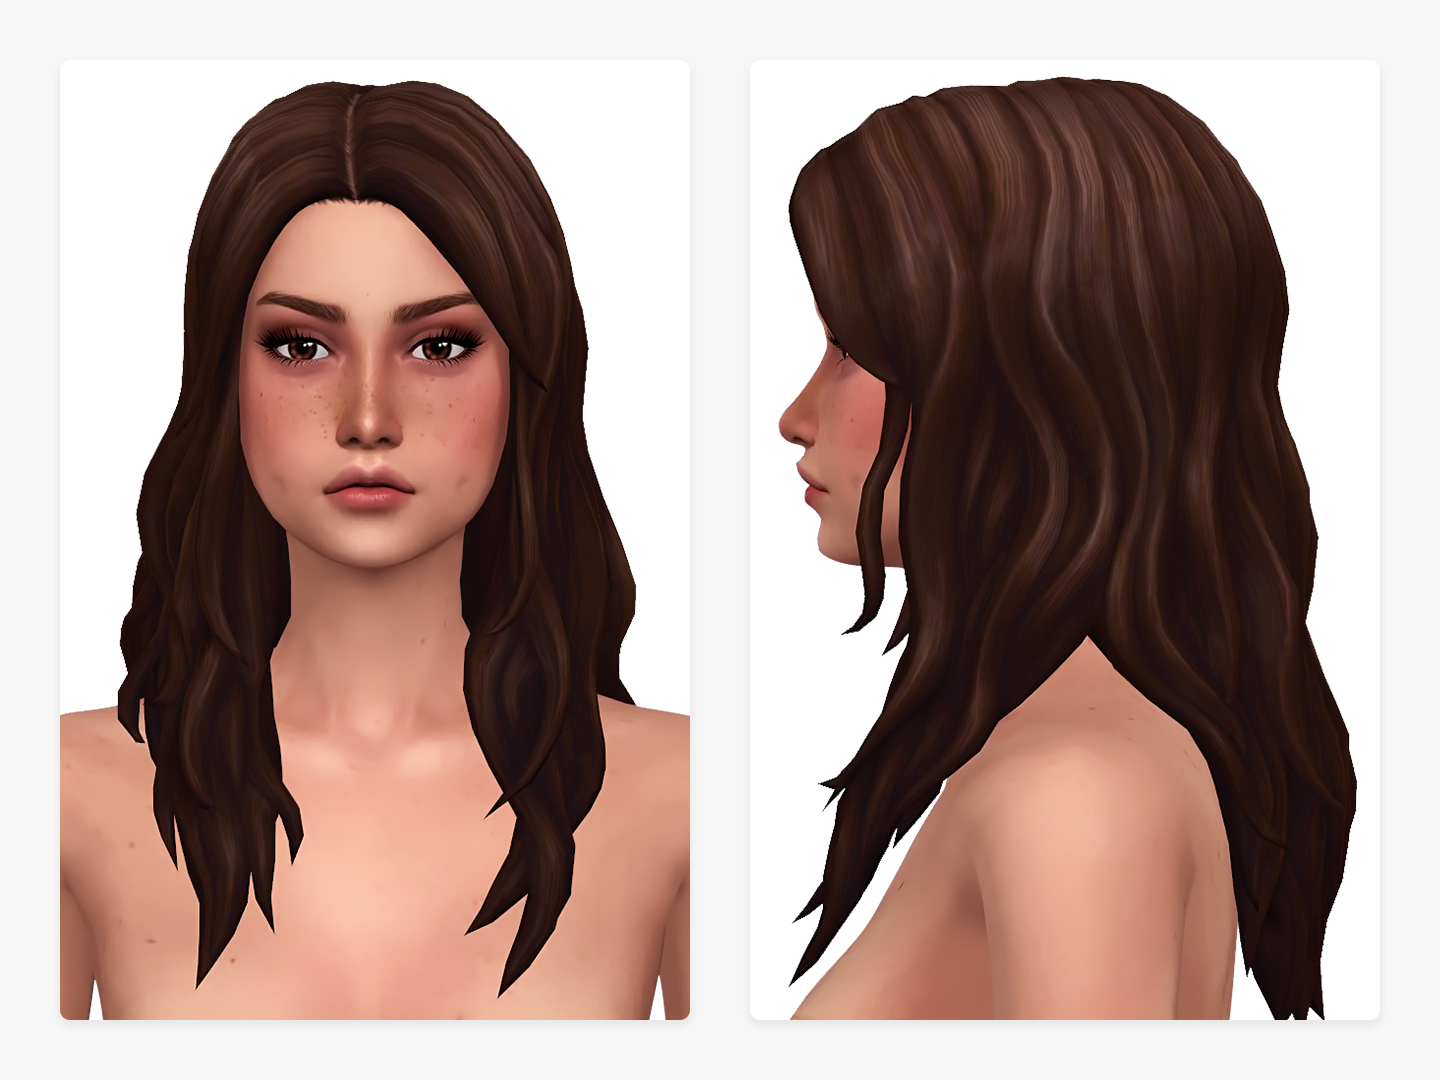 2. Mod The Sims - Downloads -> Create-a-Sim -> Hair - wide 5